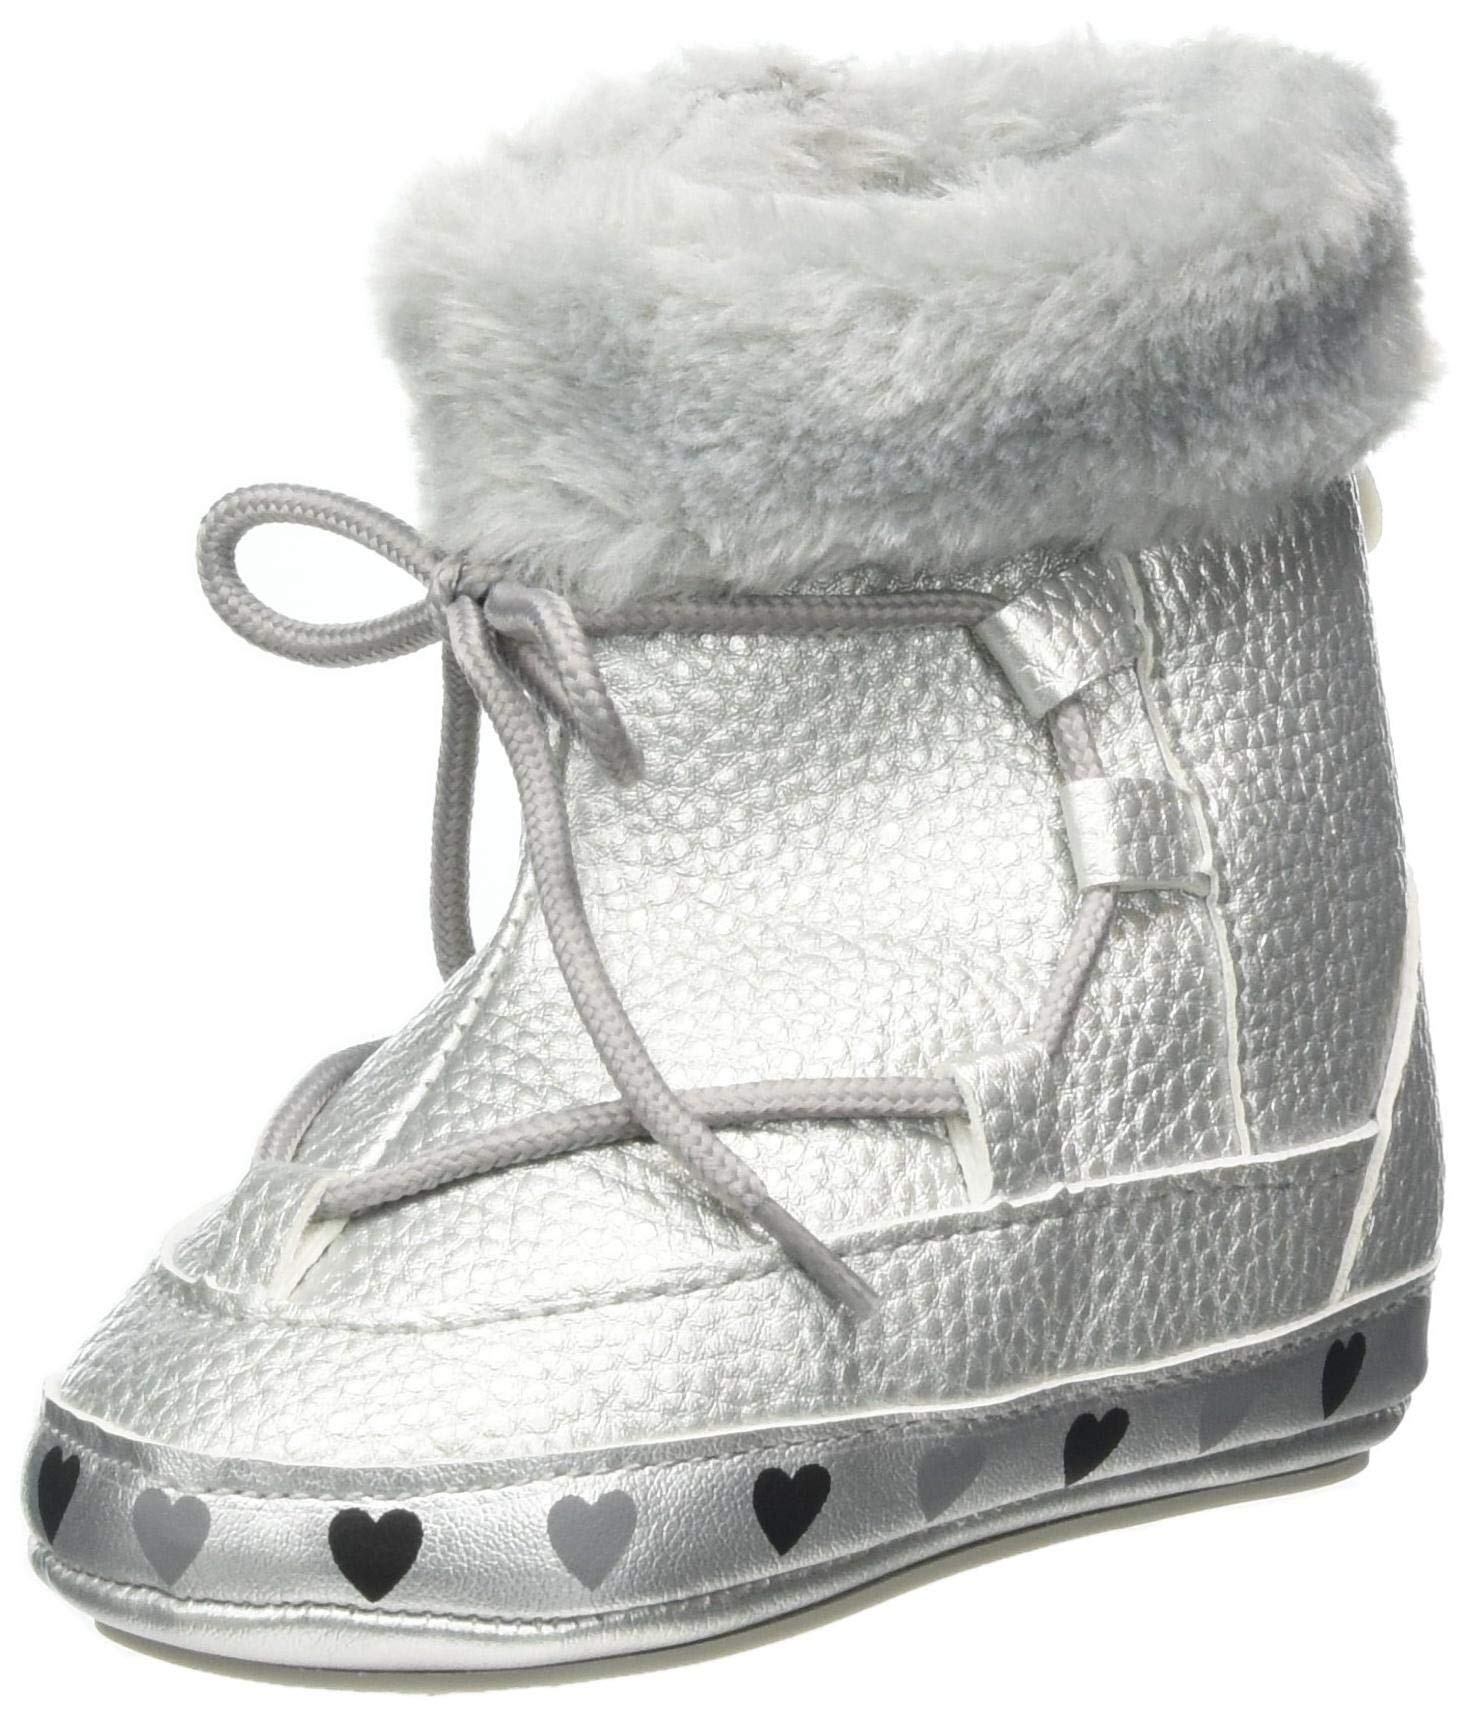 Sterntaler Jungen Mädchen Baby-Schuh First Walker Shoe, Silber, 22 EU